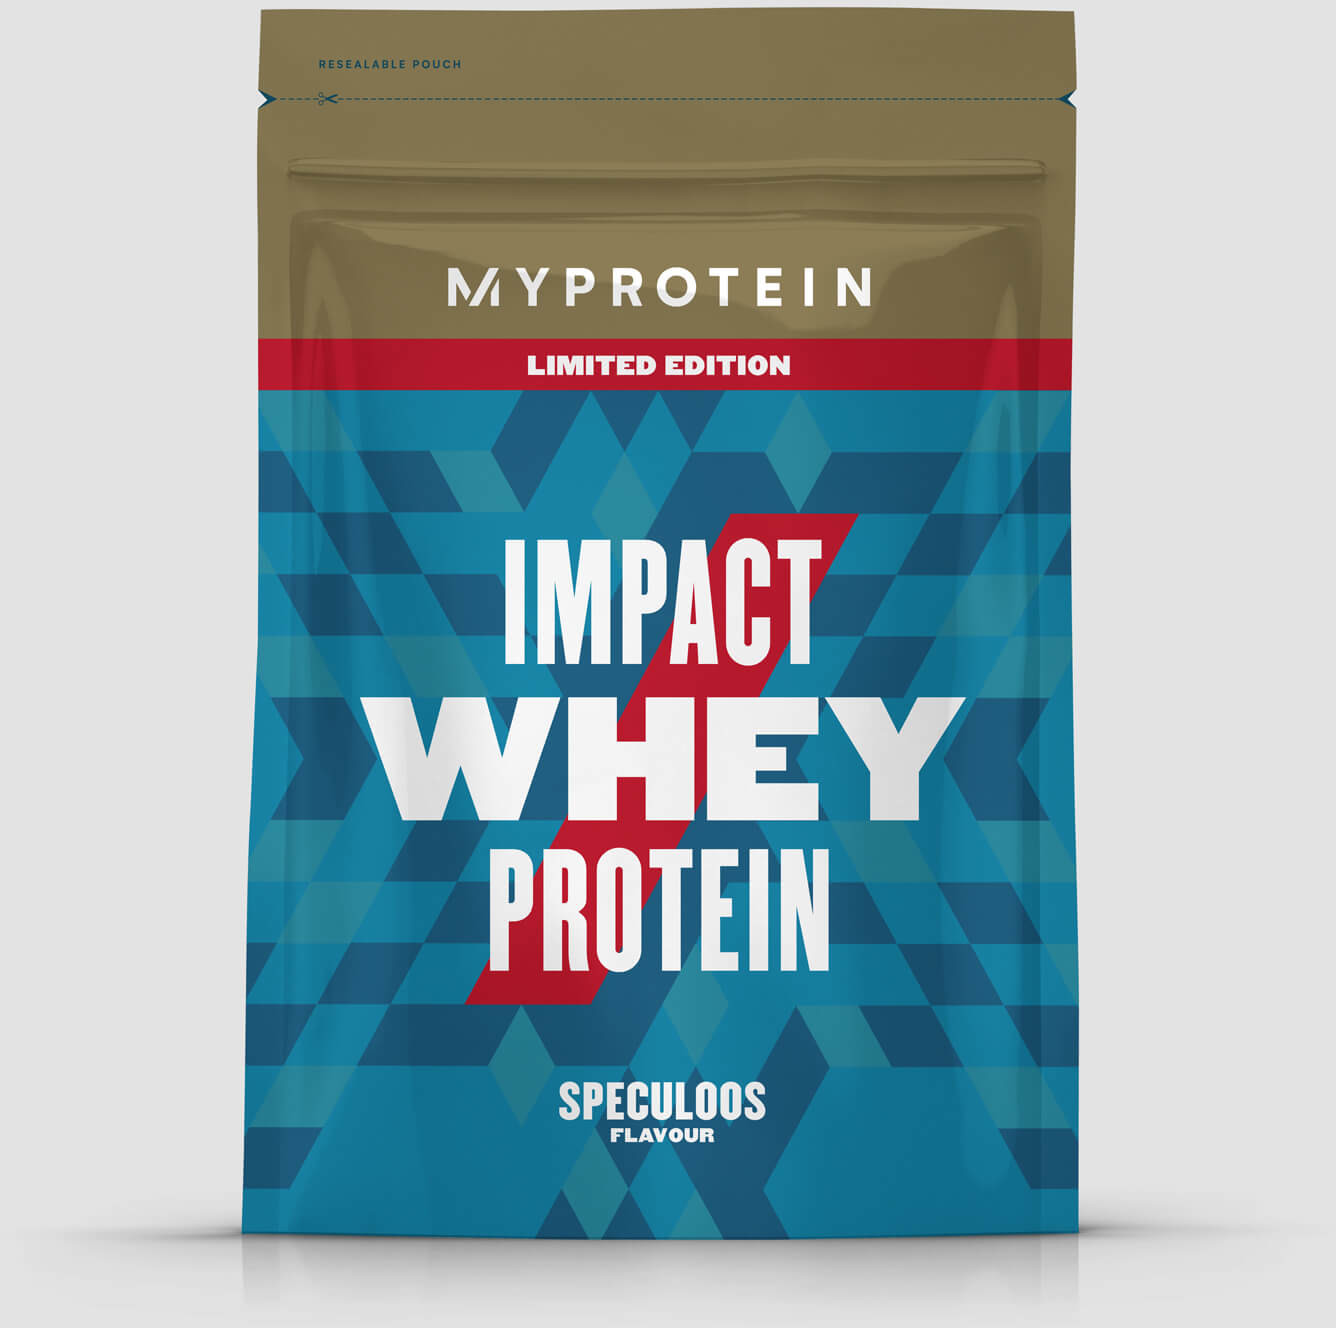 Myprotein Białko Serwatkowe (Impact Whey Protein) - 250g - Cereal Milk